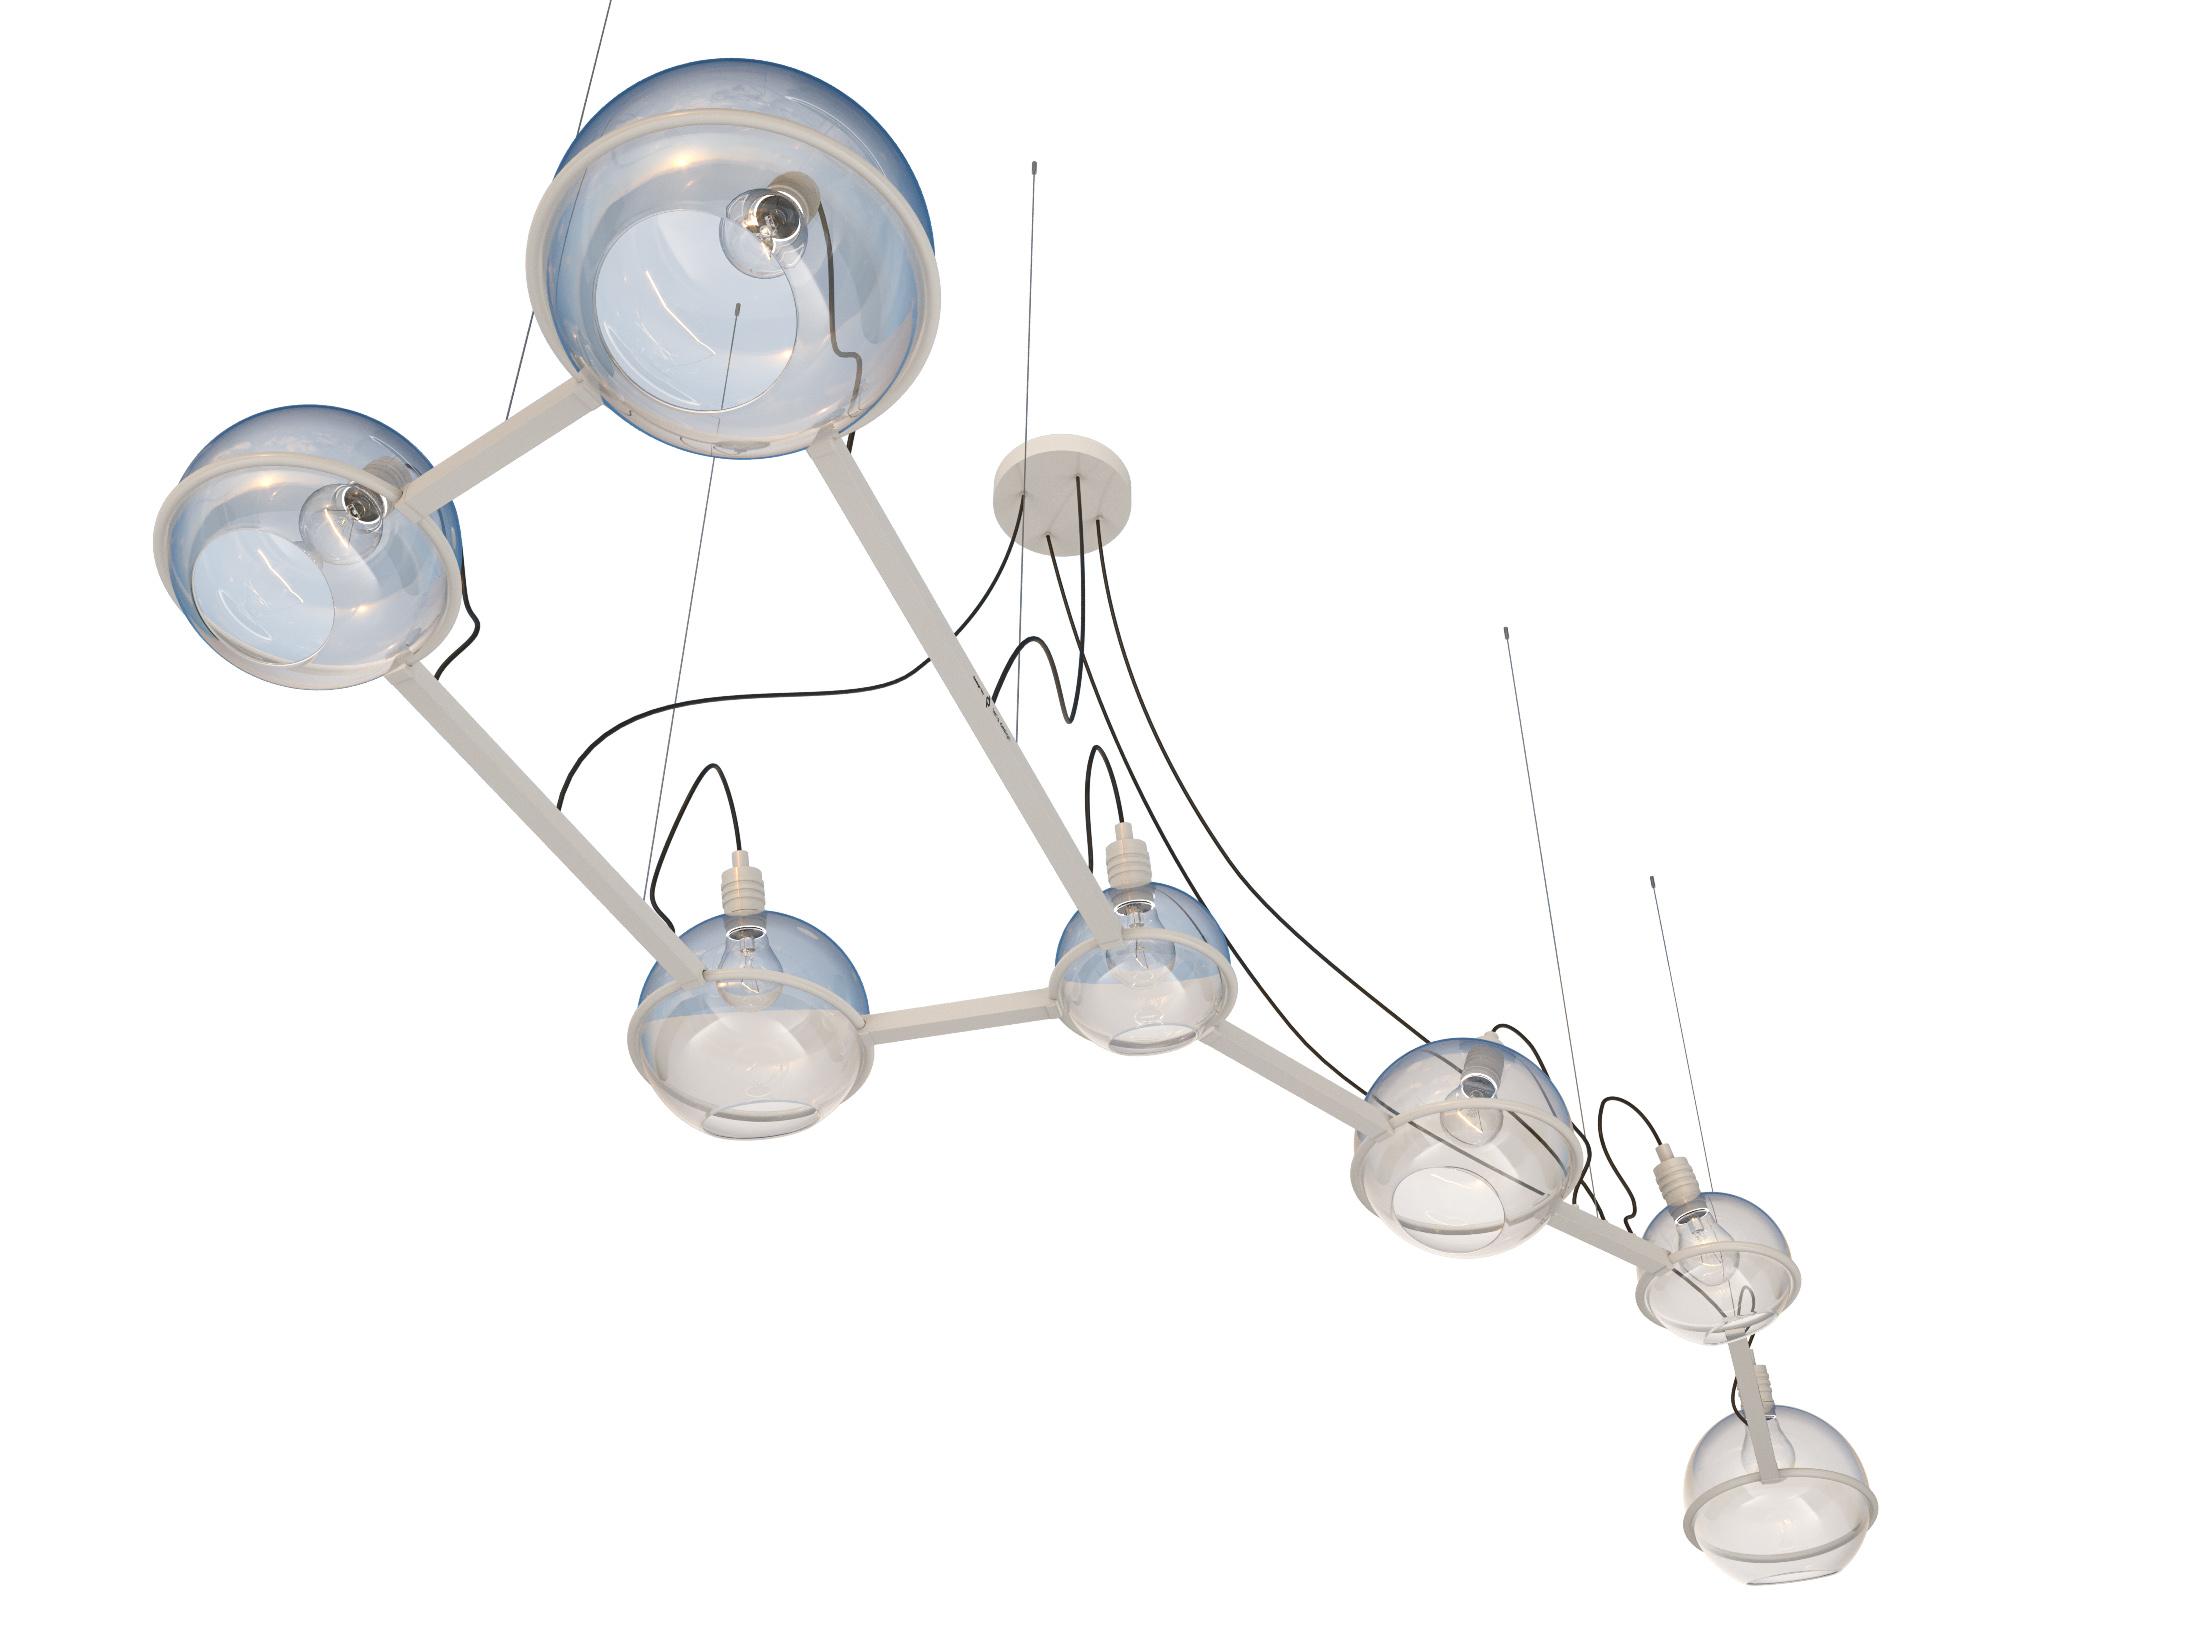 Ursa Major lamp, SKU. 20915 by Pikartlights 3d model